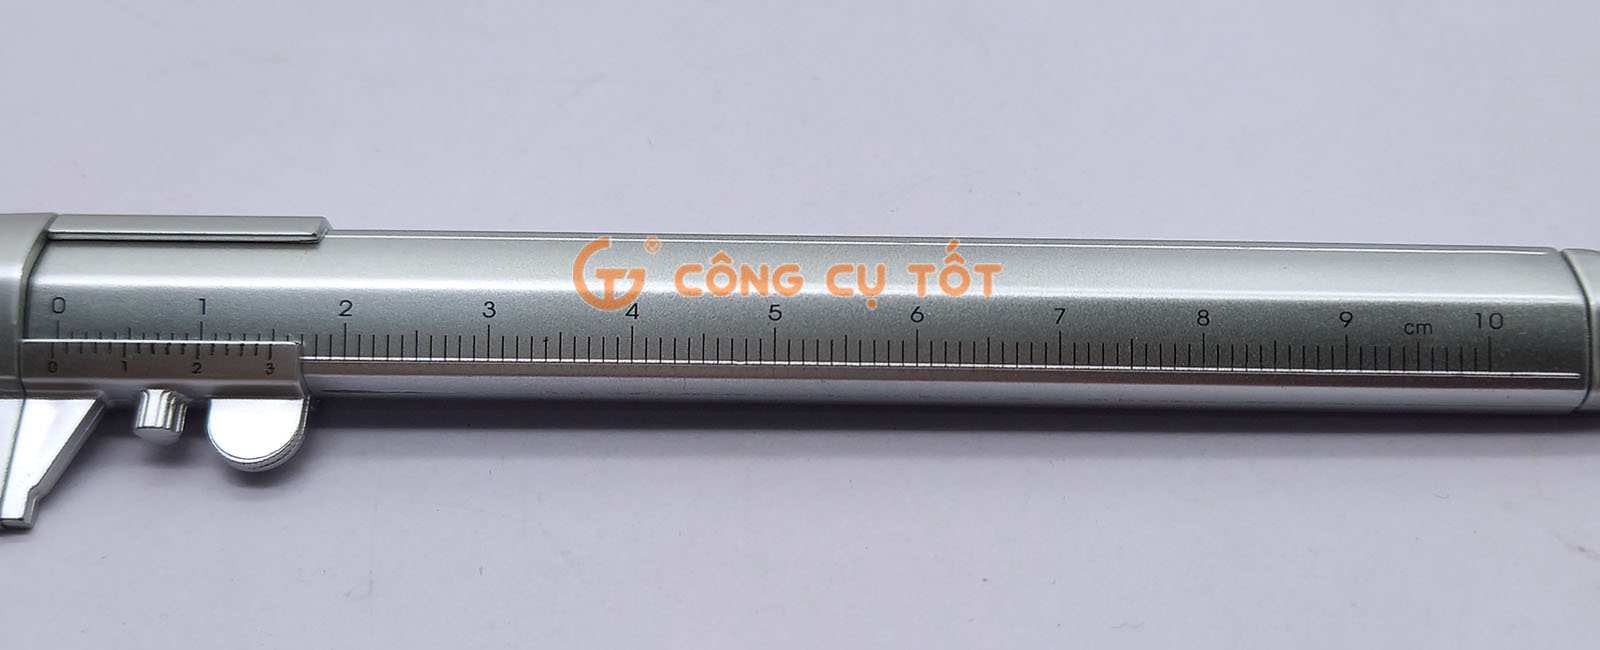 Thân bút được in vạch chia và số đo rõ nét